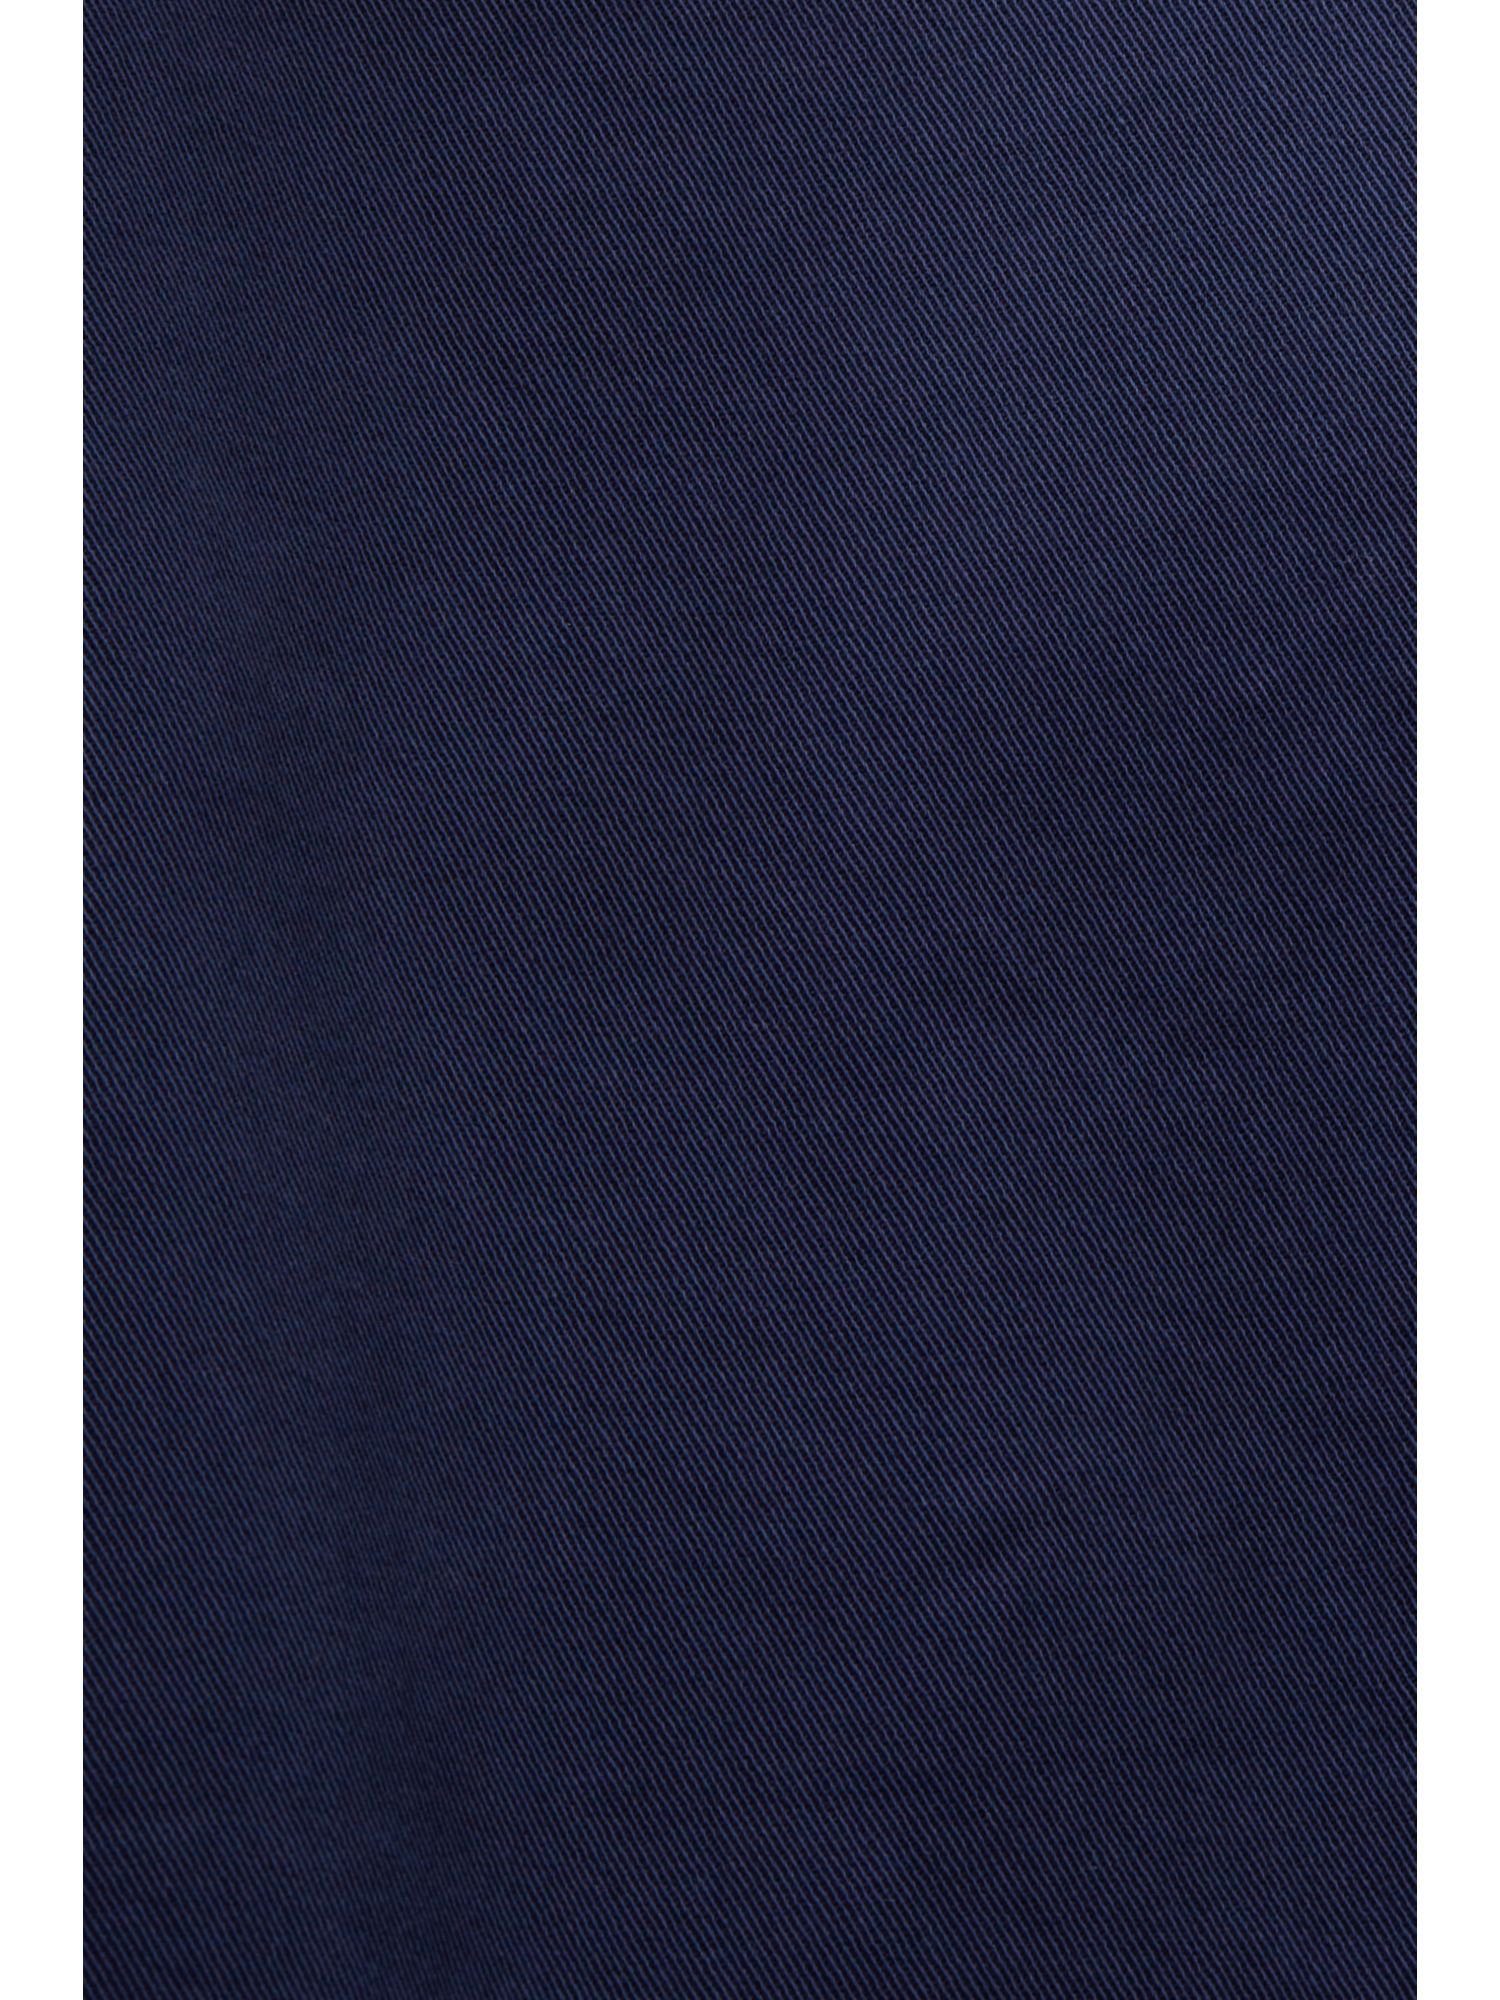 Esprit Stretch-Hose Chinohose in BLUE Passform mit mittelhohem DARK Bund gerader